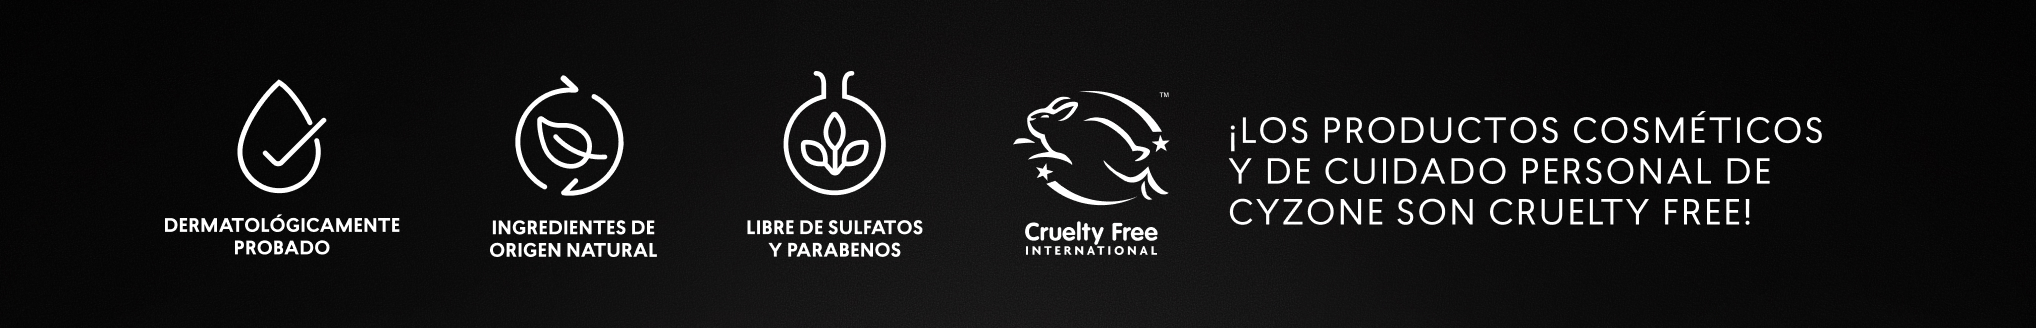  Línea de maquillaje libres de crueldad animal Studio Look Cyzone